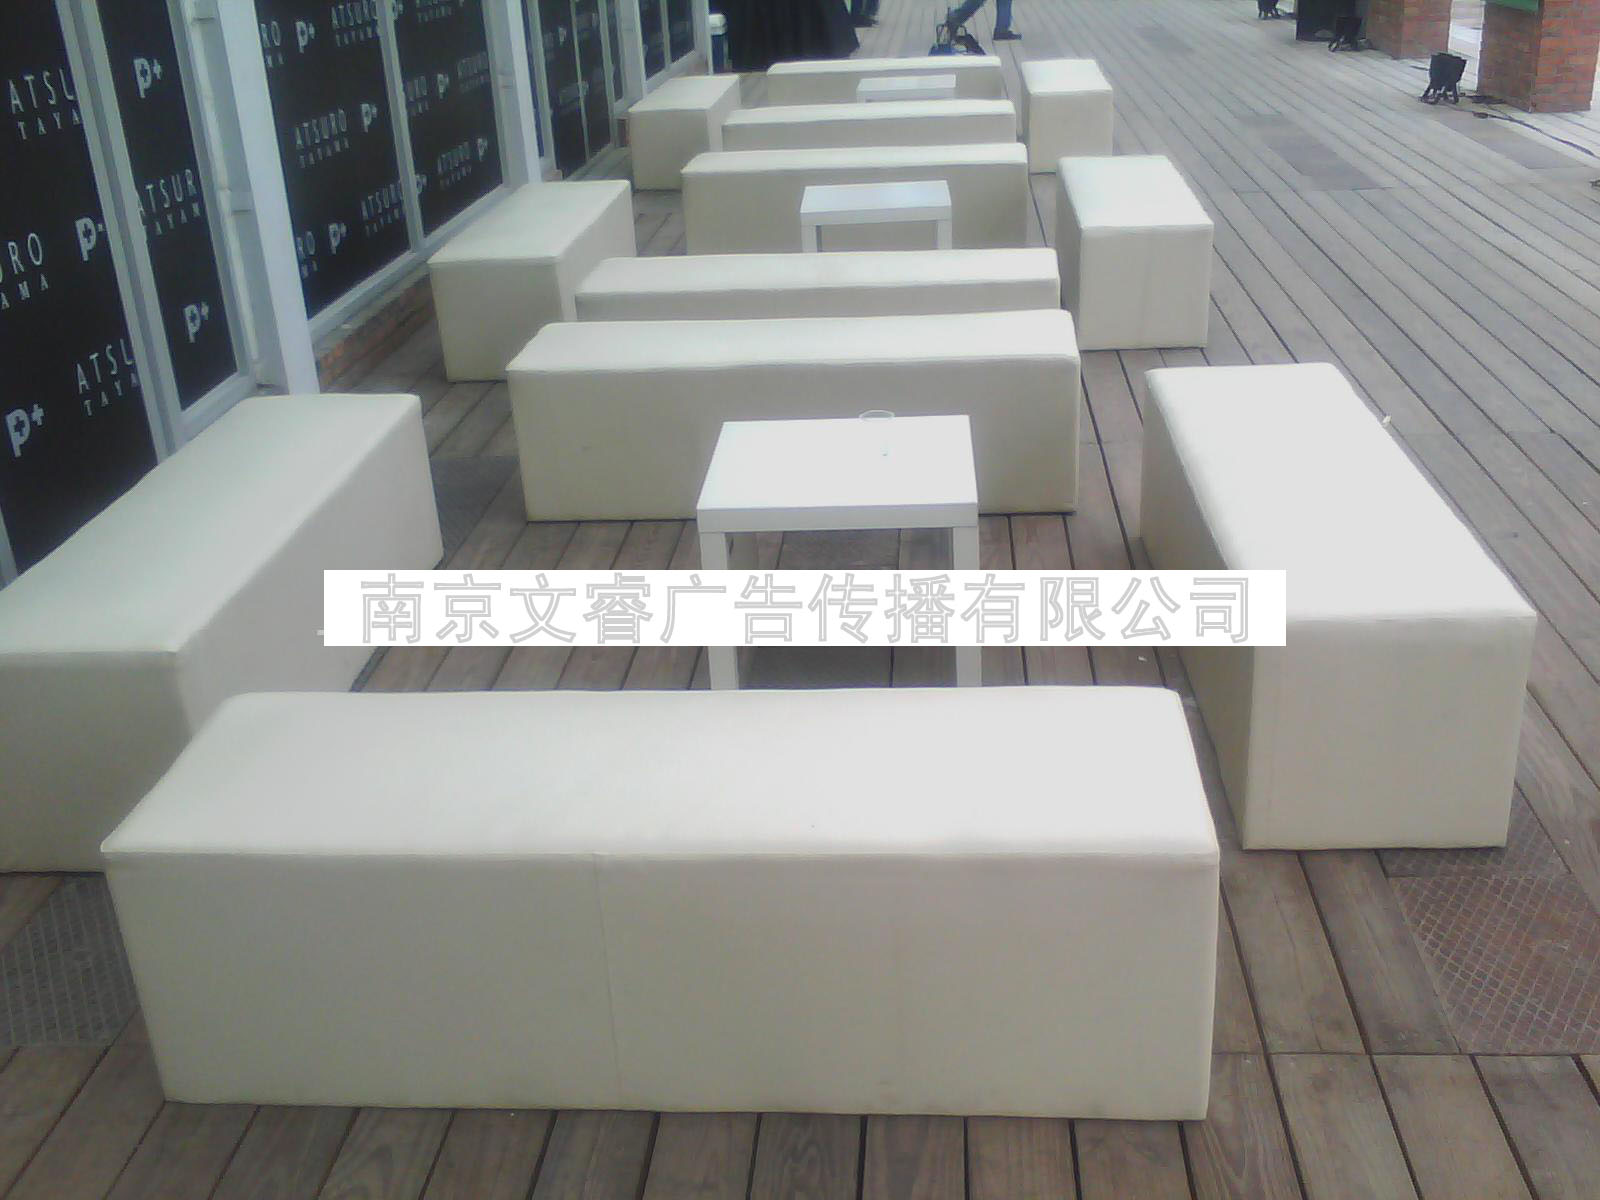 南京桌椅出租 南京塑料桌椅租赁 南京优惠价桌椅租赁